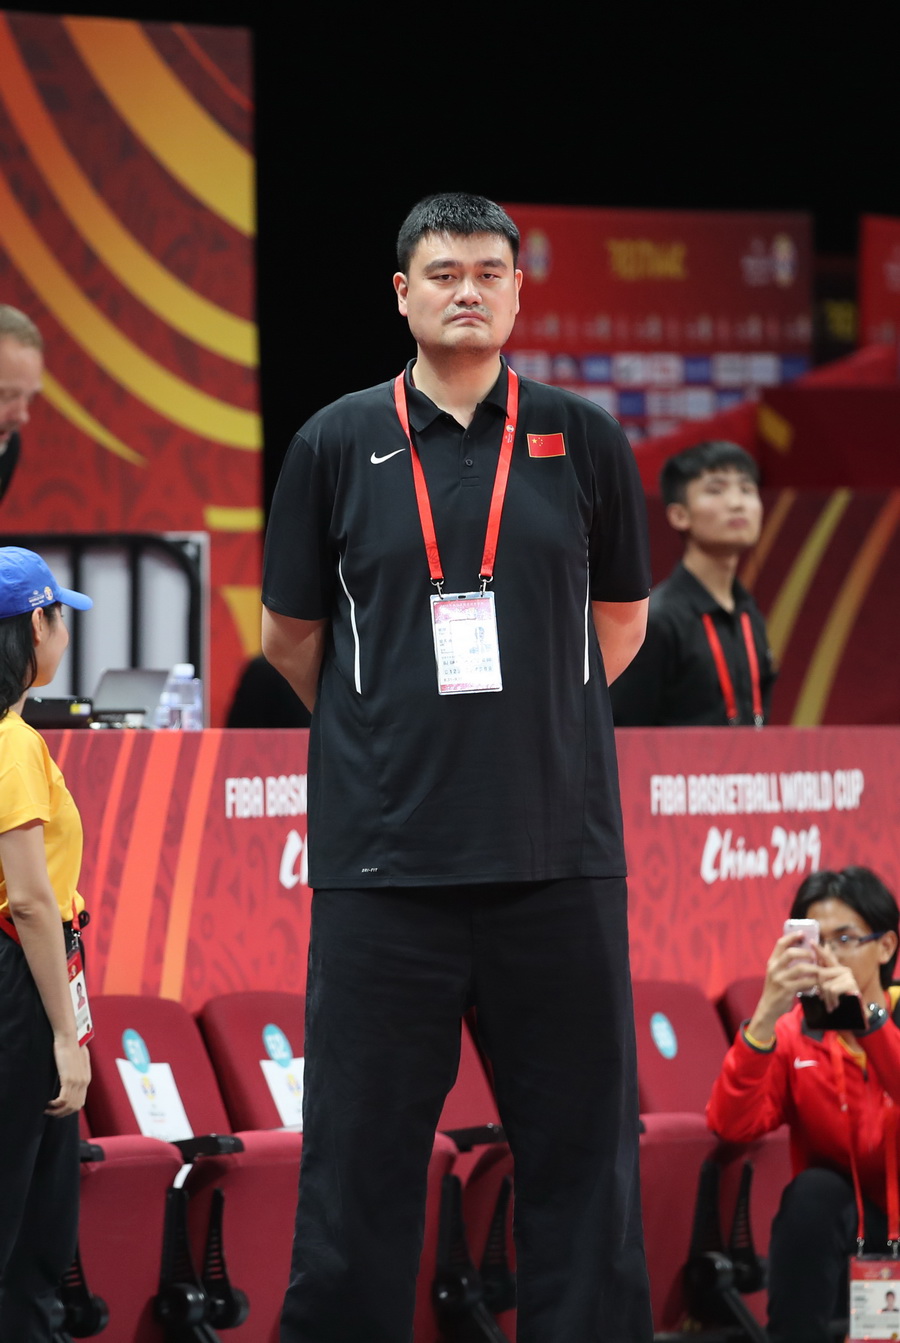 中國籃球協會主席姚明在賽前觀看訓練。新華社記者孟永民攝